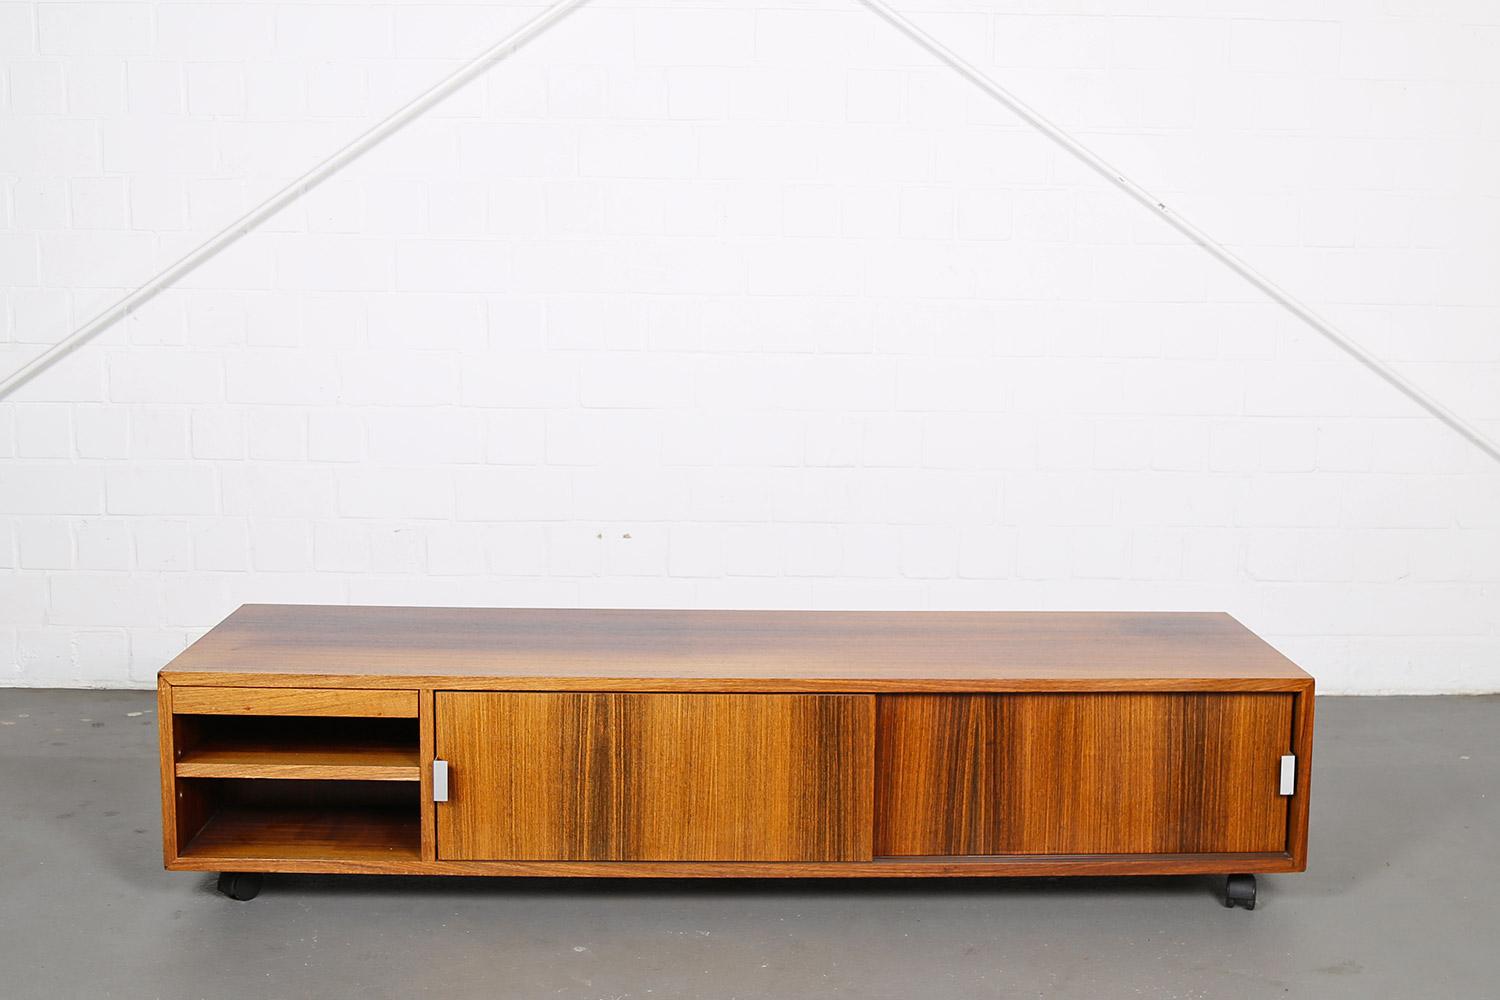 Un rare - et jamais vu - Lowboard de Bofinger Produktion conçu par Antoine Philippon dans les années 70 et fabriqué en bois de rose. Peut être utilisé comme séparateur de pièce car les deux côtés sont équipés d'étagères.